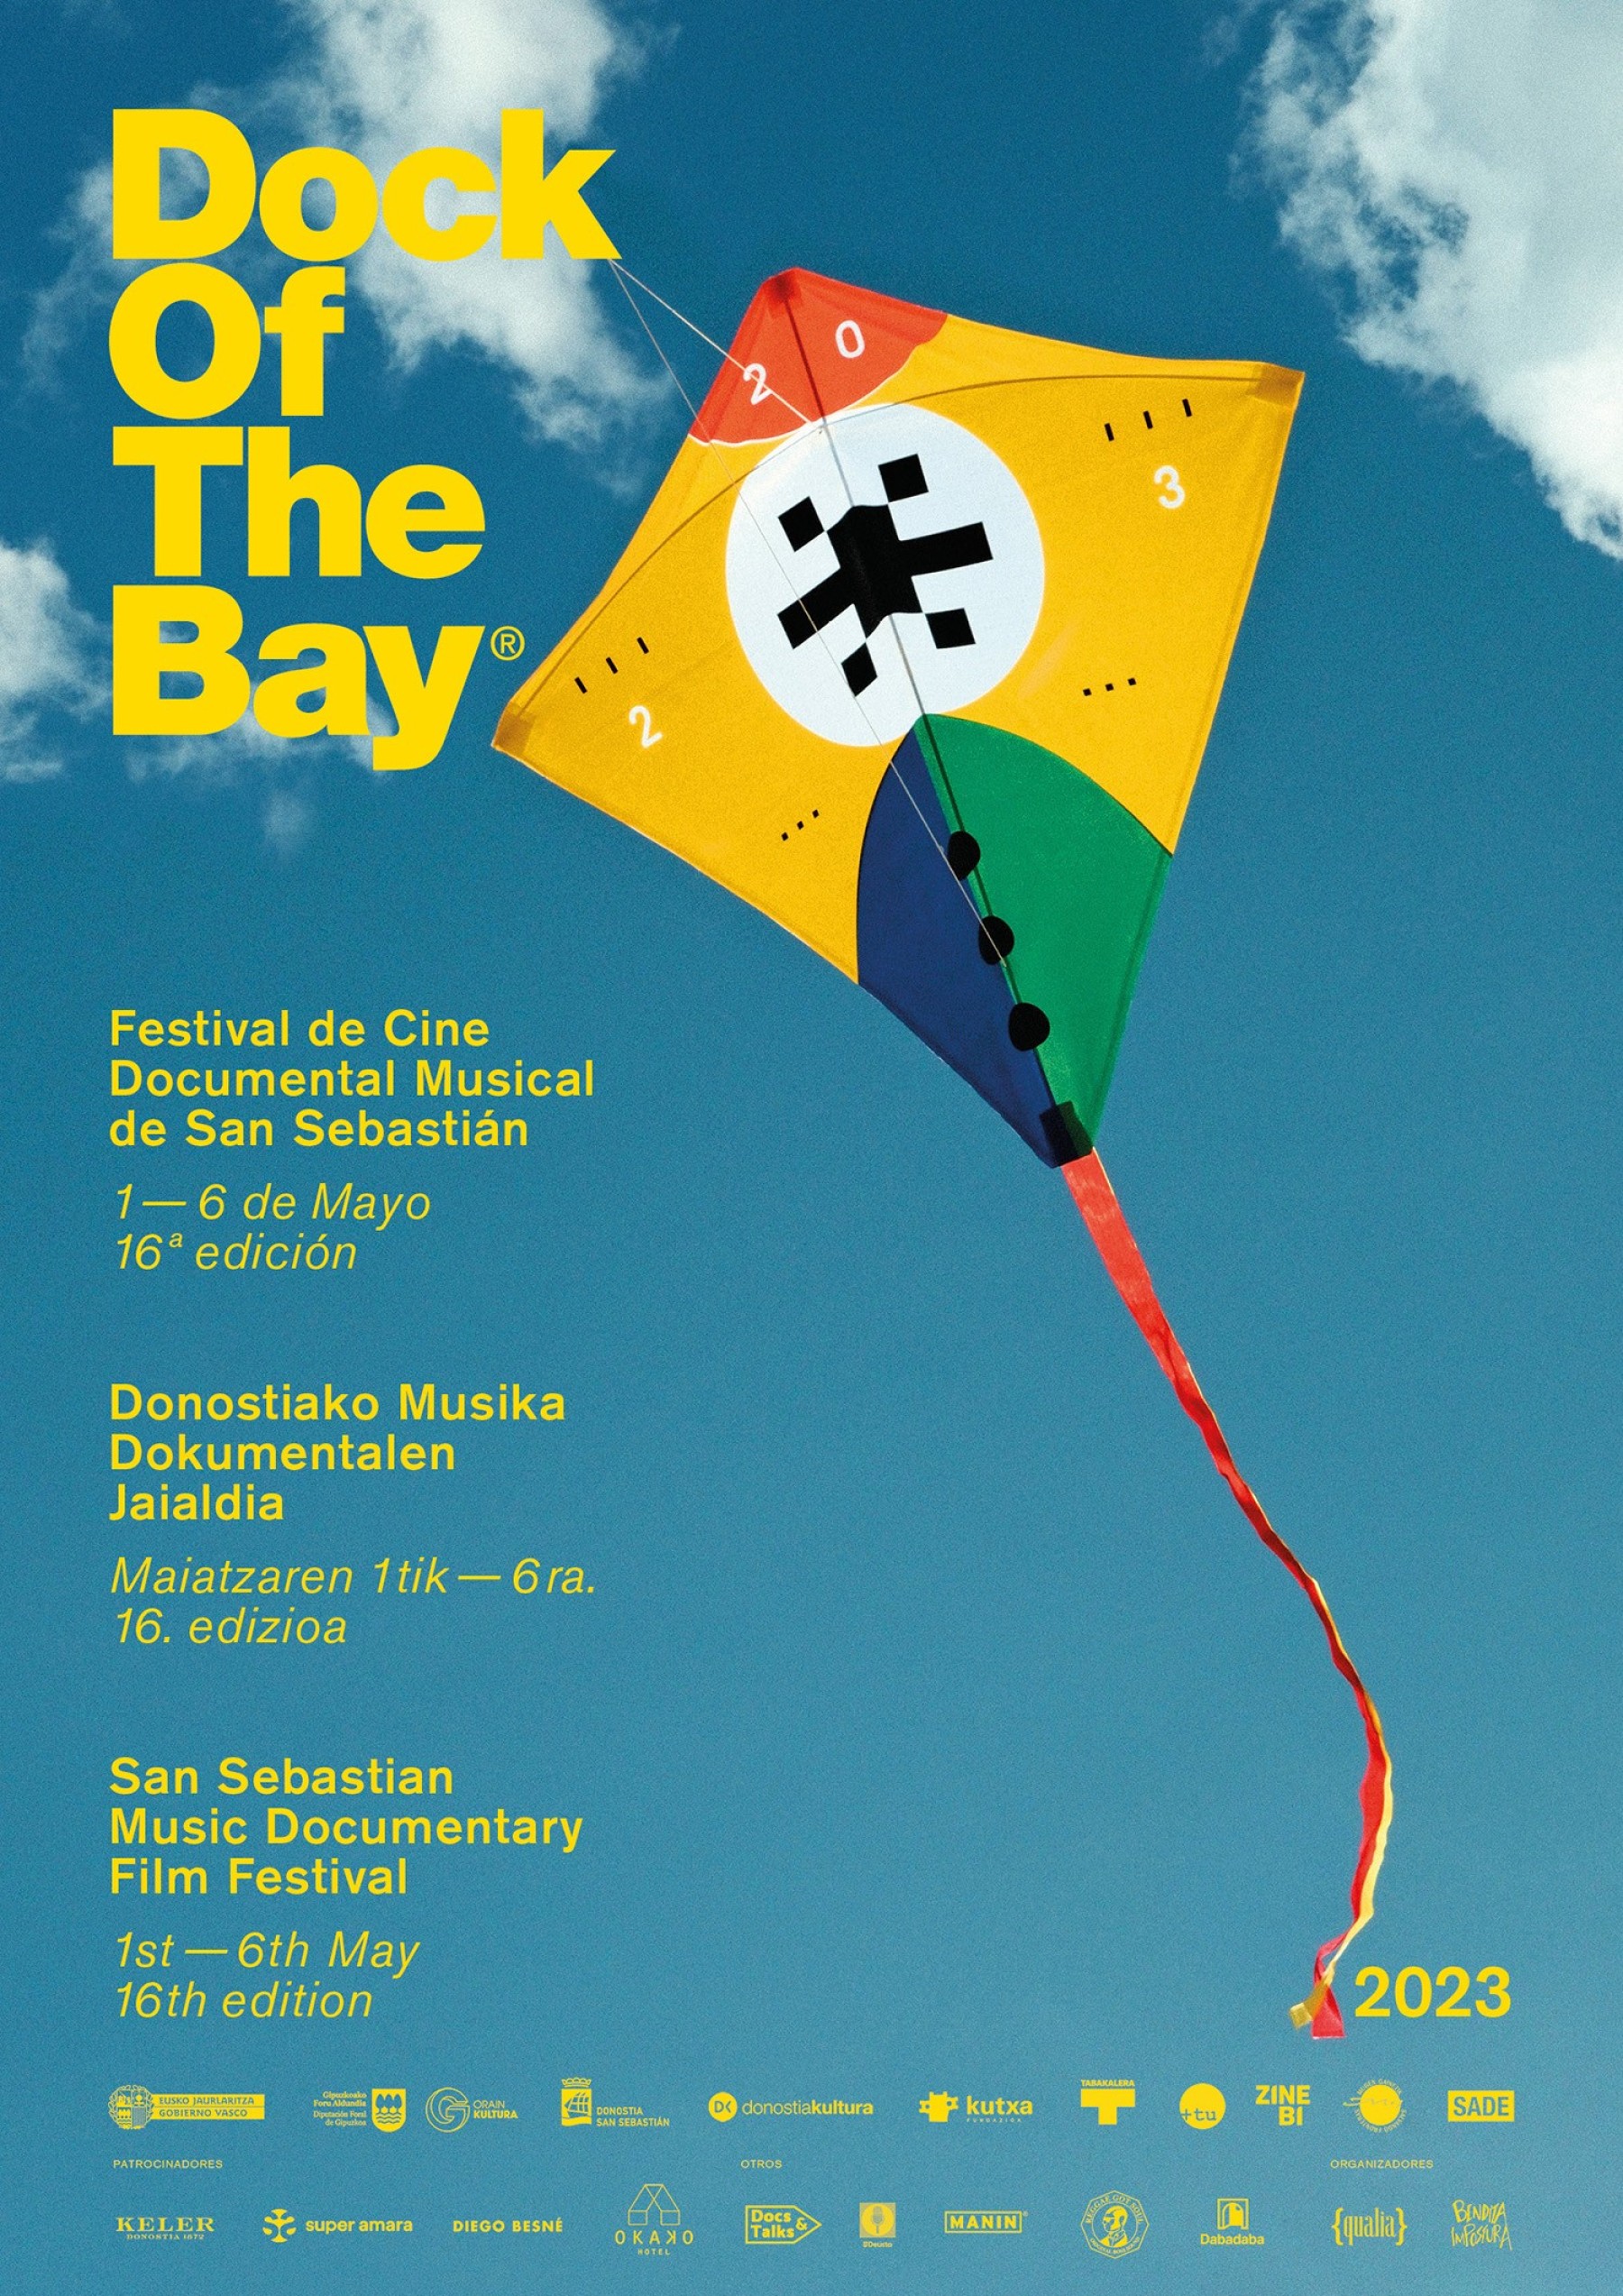 Dock of the Bay, el Festival de Cine Documental Musical de Donostia, presenta toda su programación.